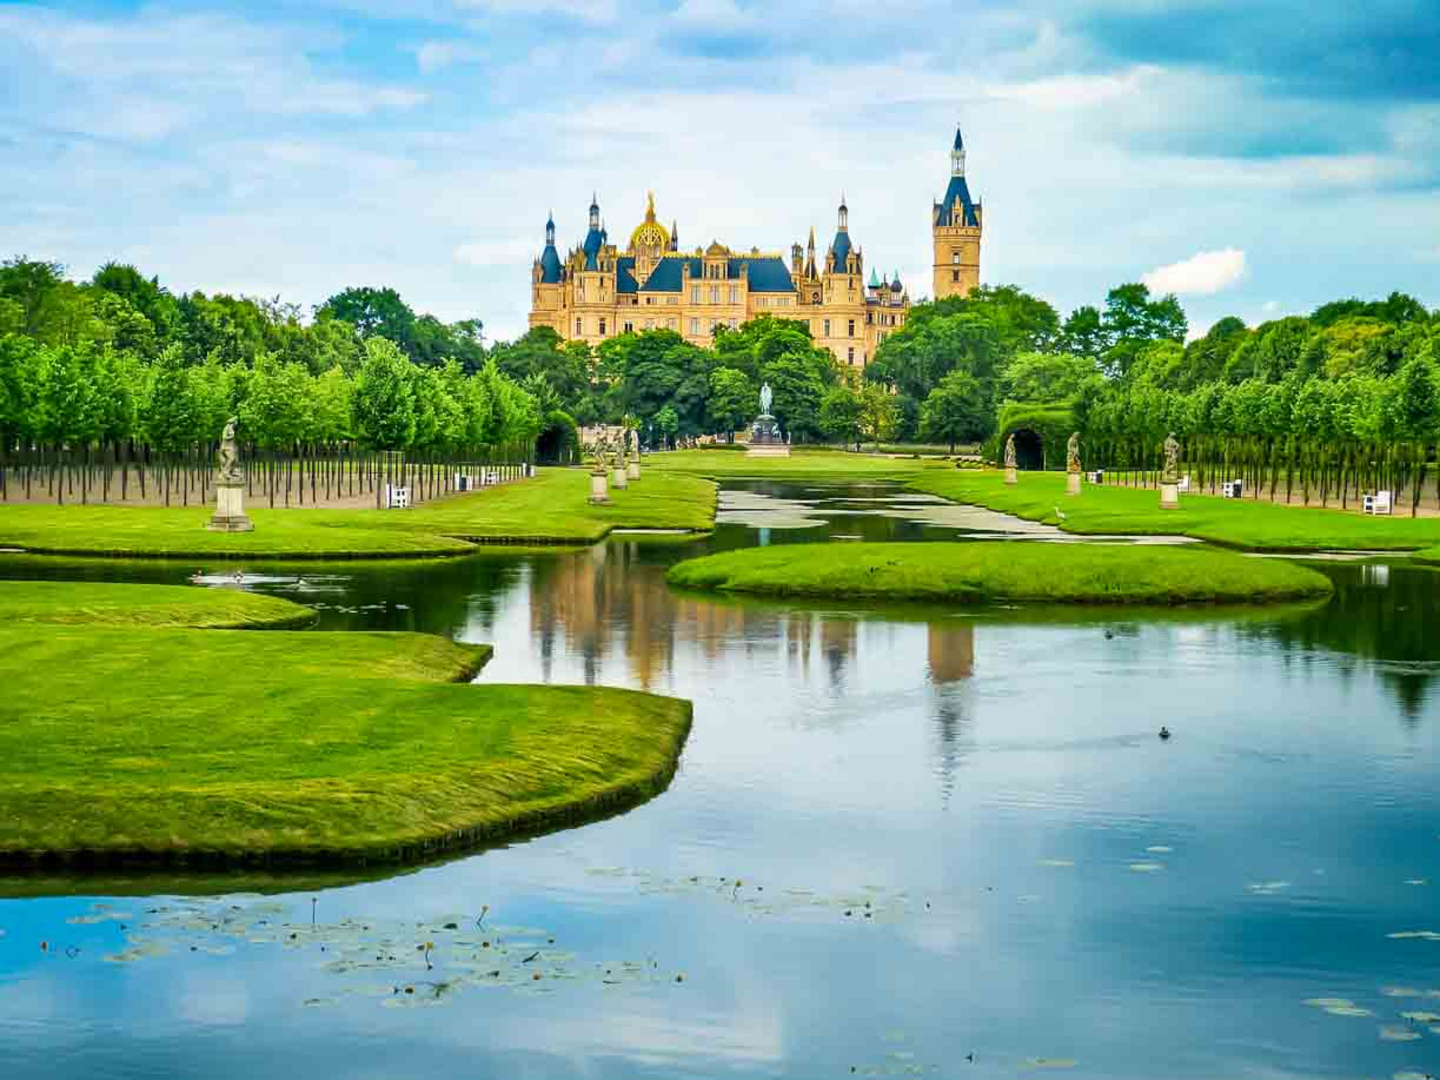 Wasser, Parks und das Schweriner Schloss prägen die Landeshauptstadt von Mecklenburg-Vorpommern